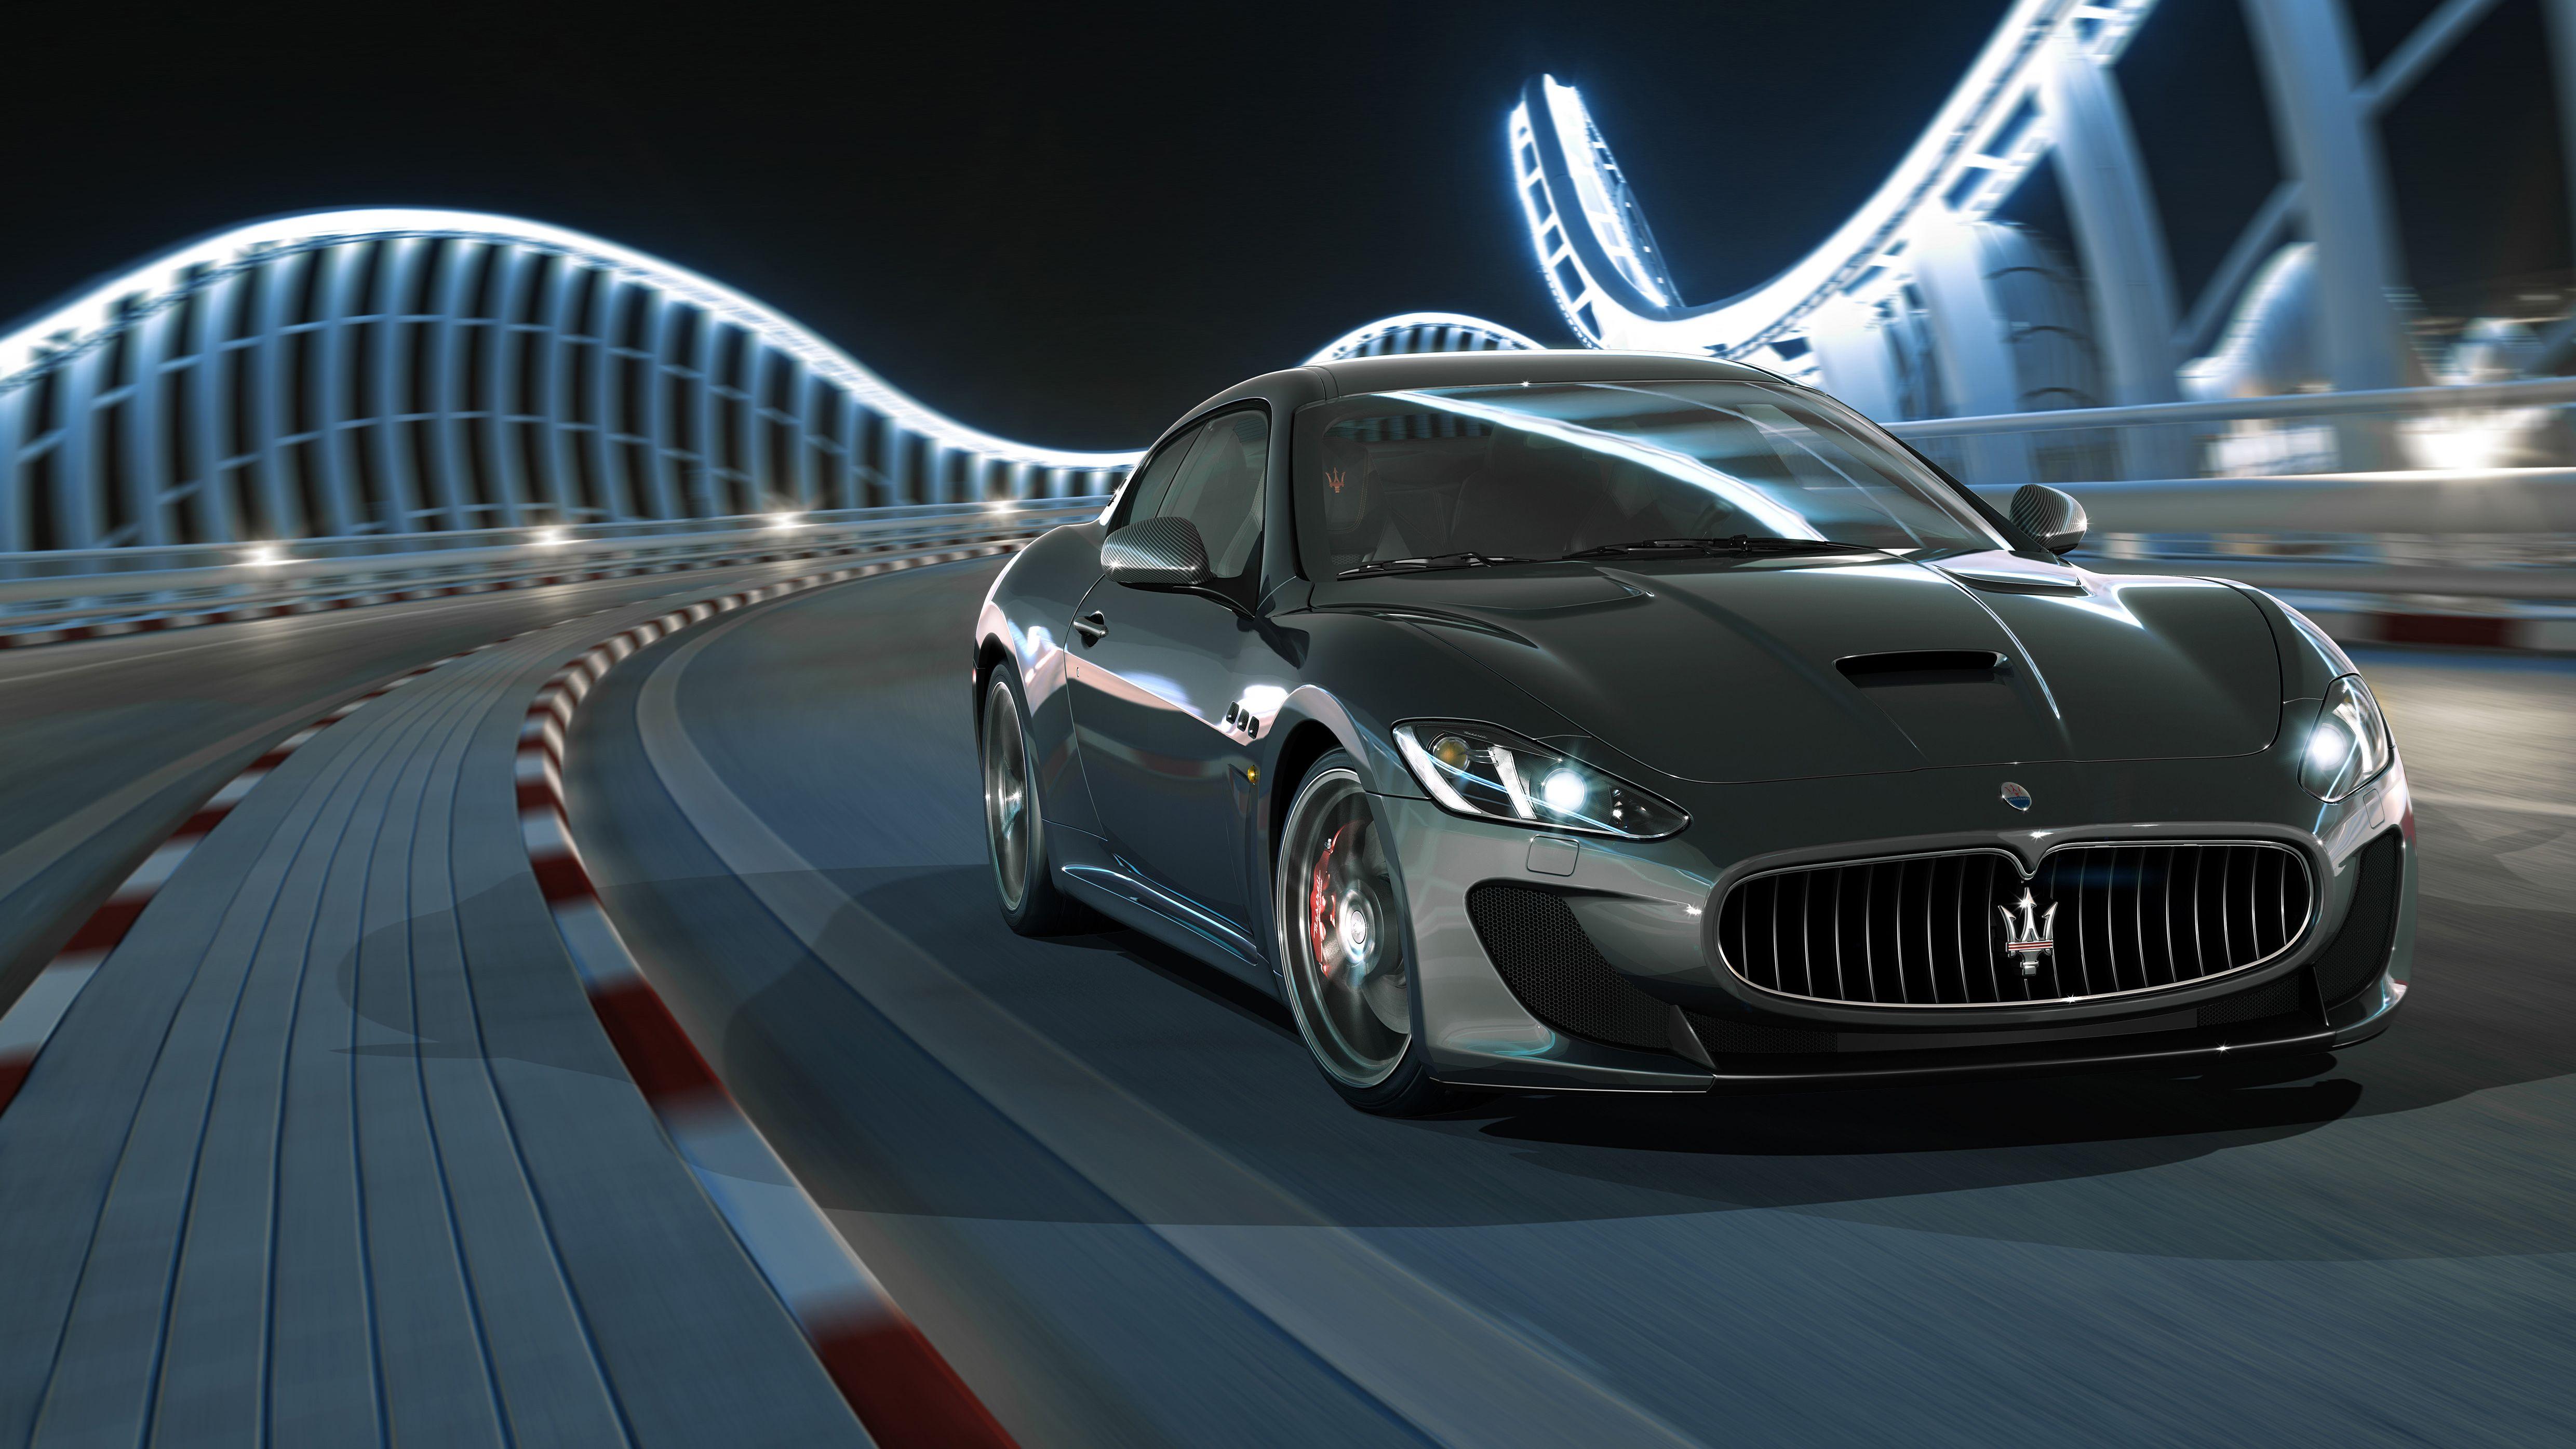 Maserati Grancabrio Wallpapers Wallpaper Cave